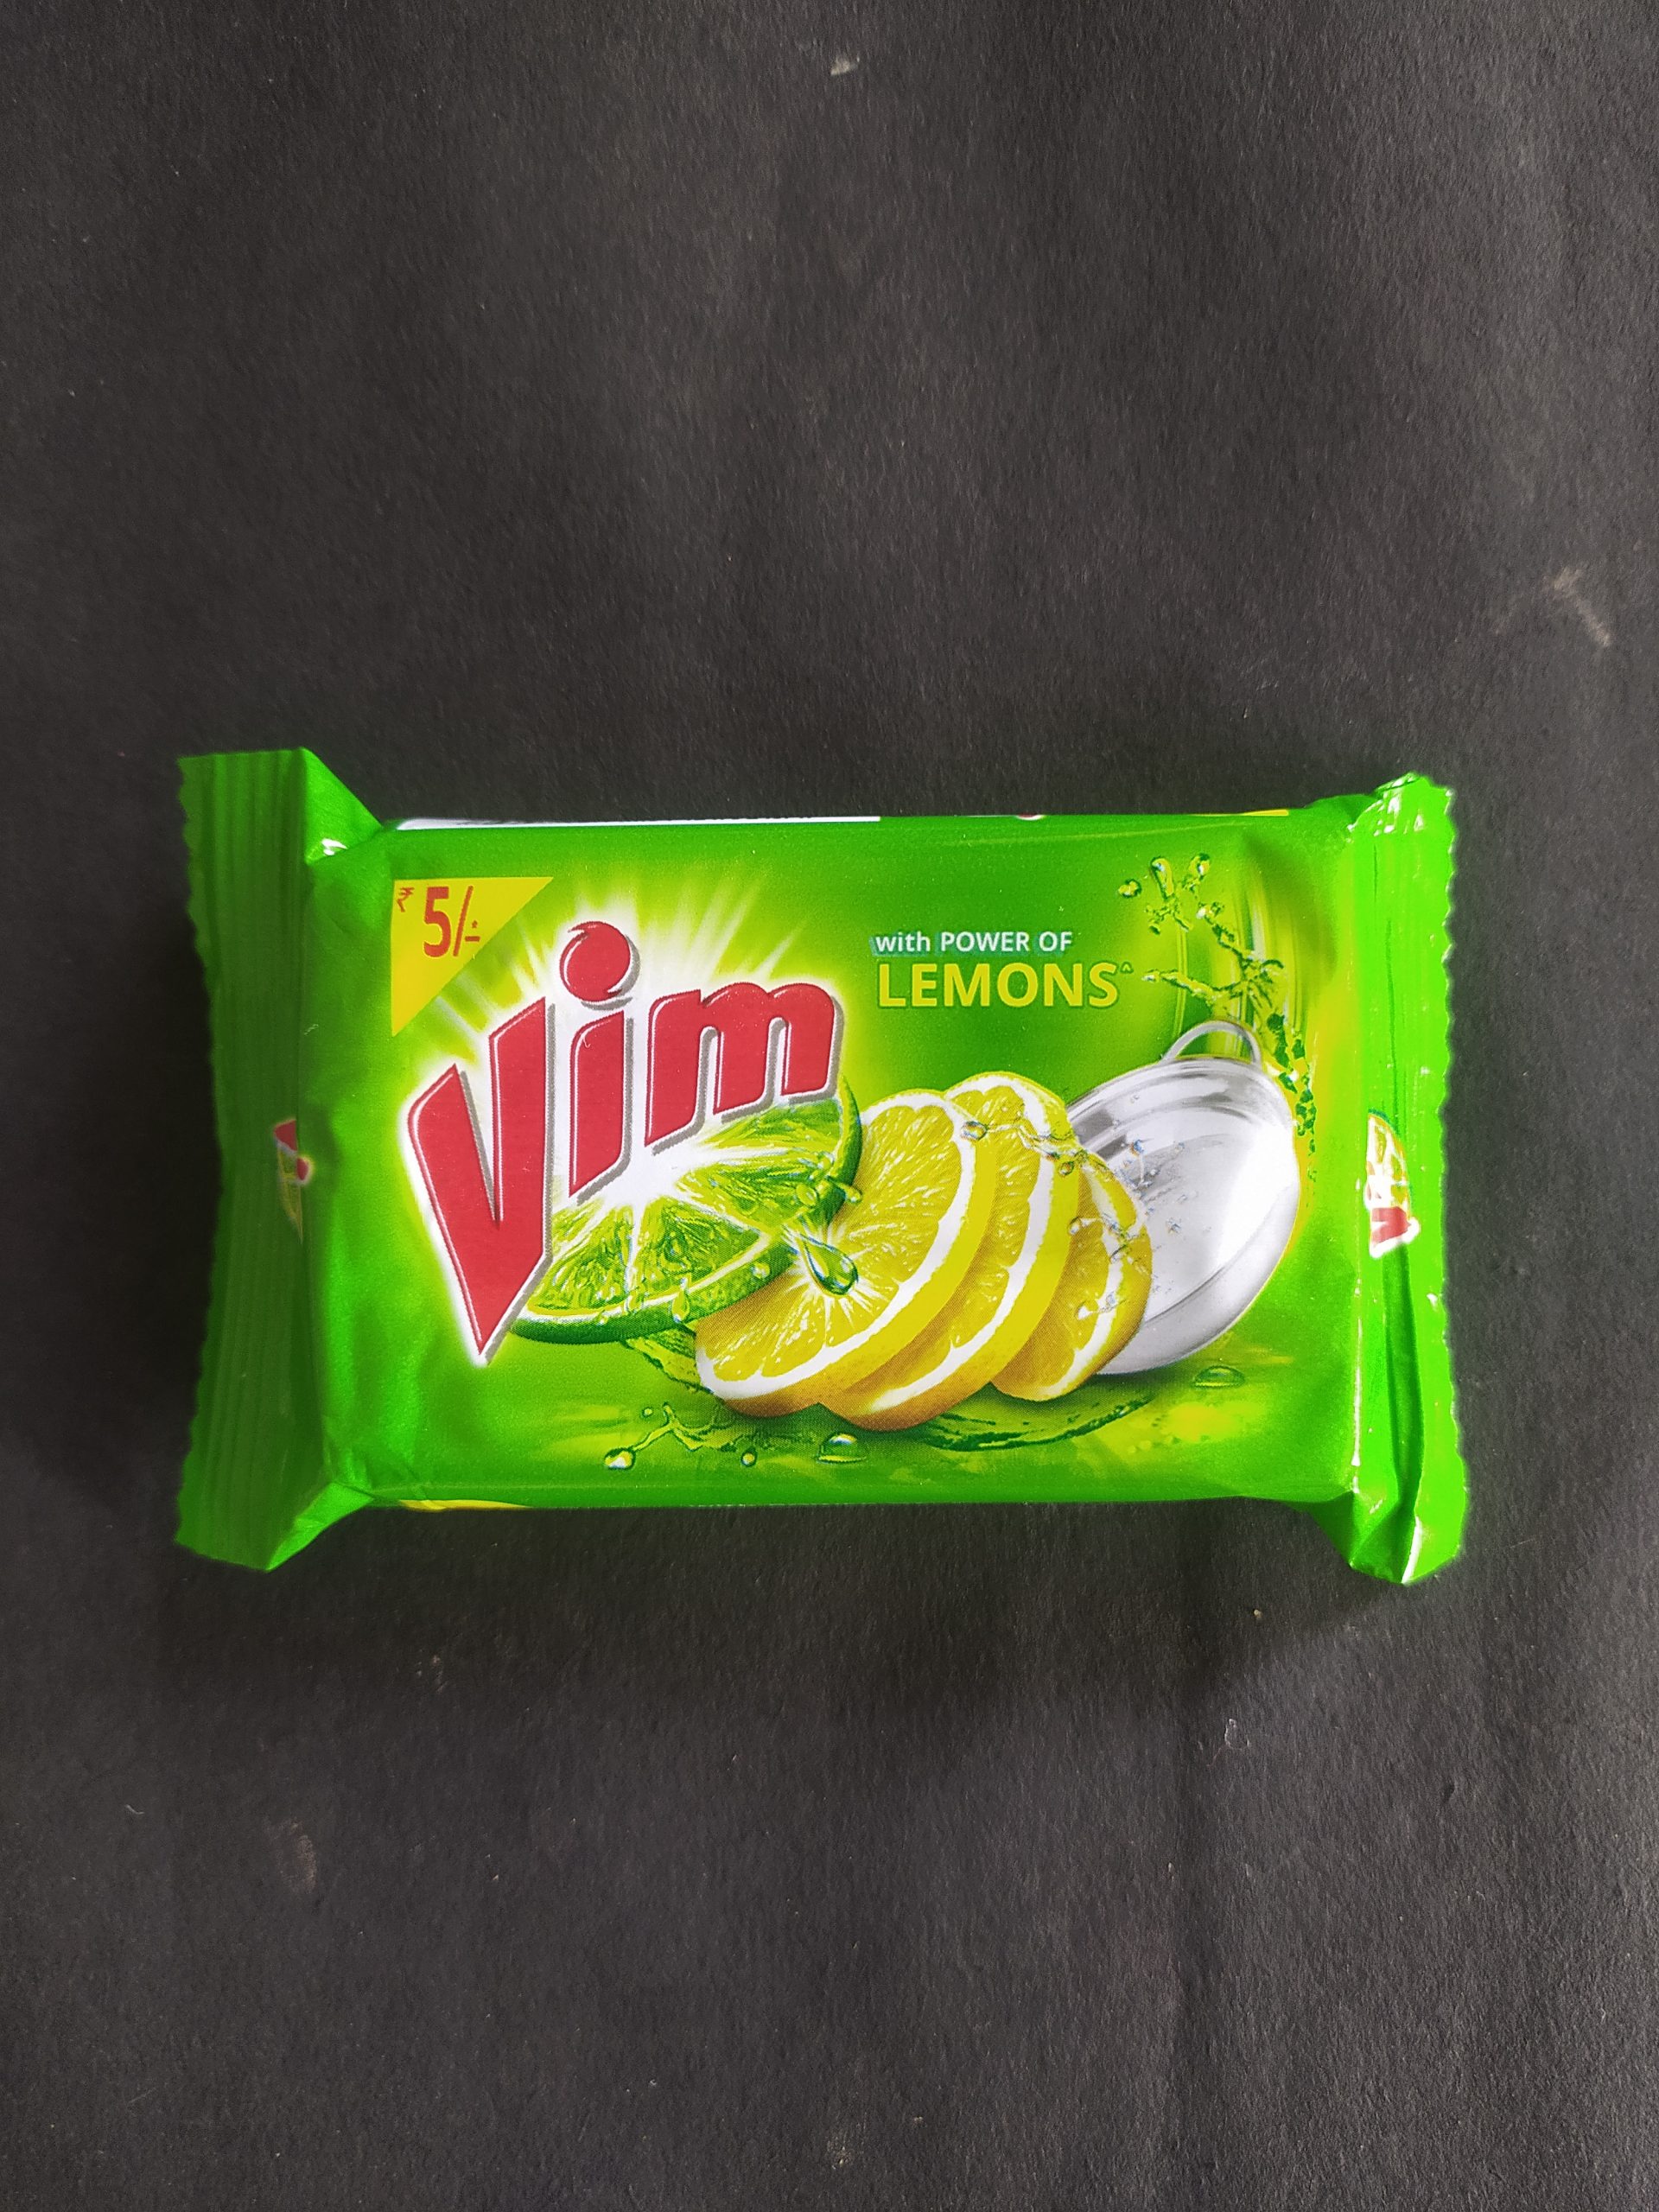 A vim bar pack